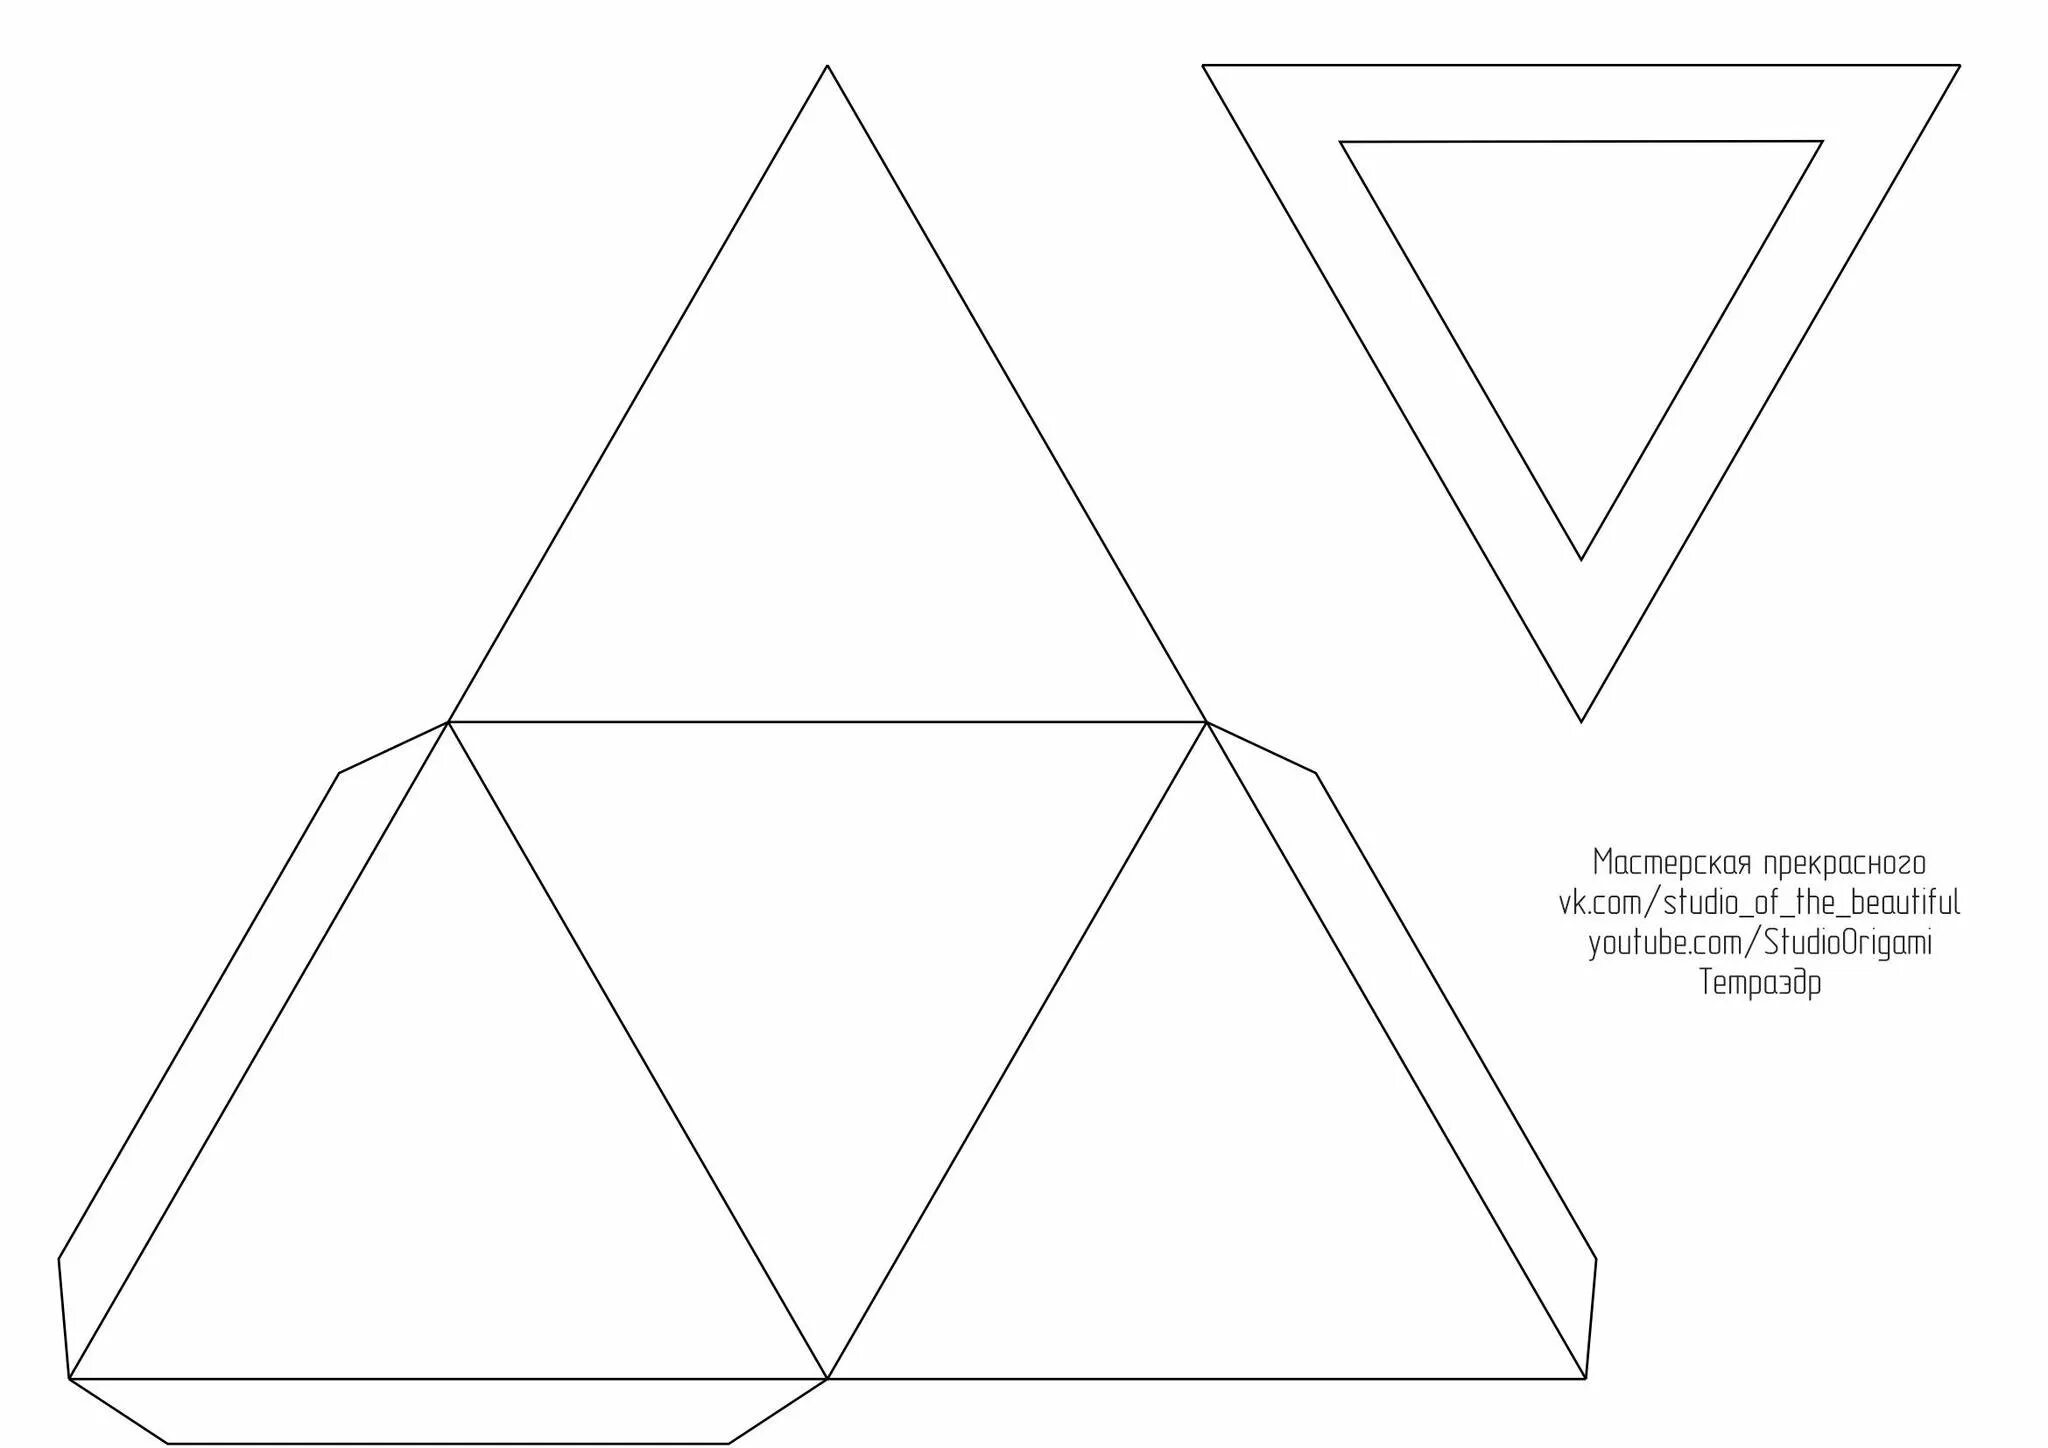 Вырезаем фигуры из бумаги. Развертка правильного тетраэдра для склеивания. Тетраэдр из а4. Разветка правильноготетраэдра. Правильный тетраэдр развертка для склеивания а4.